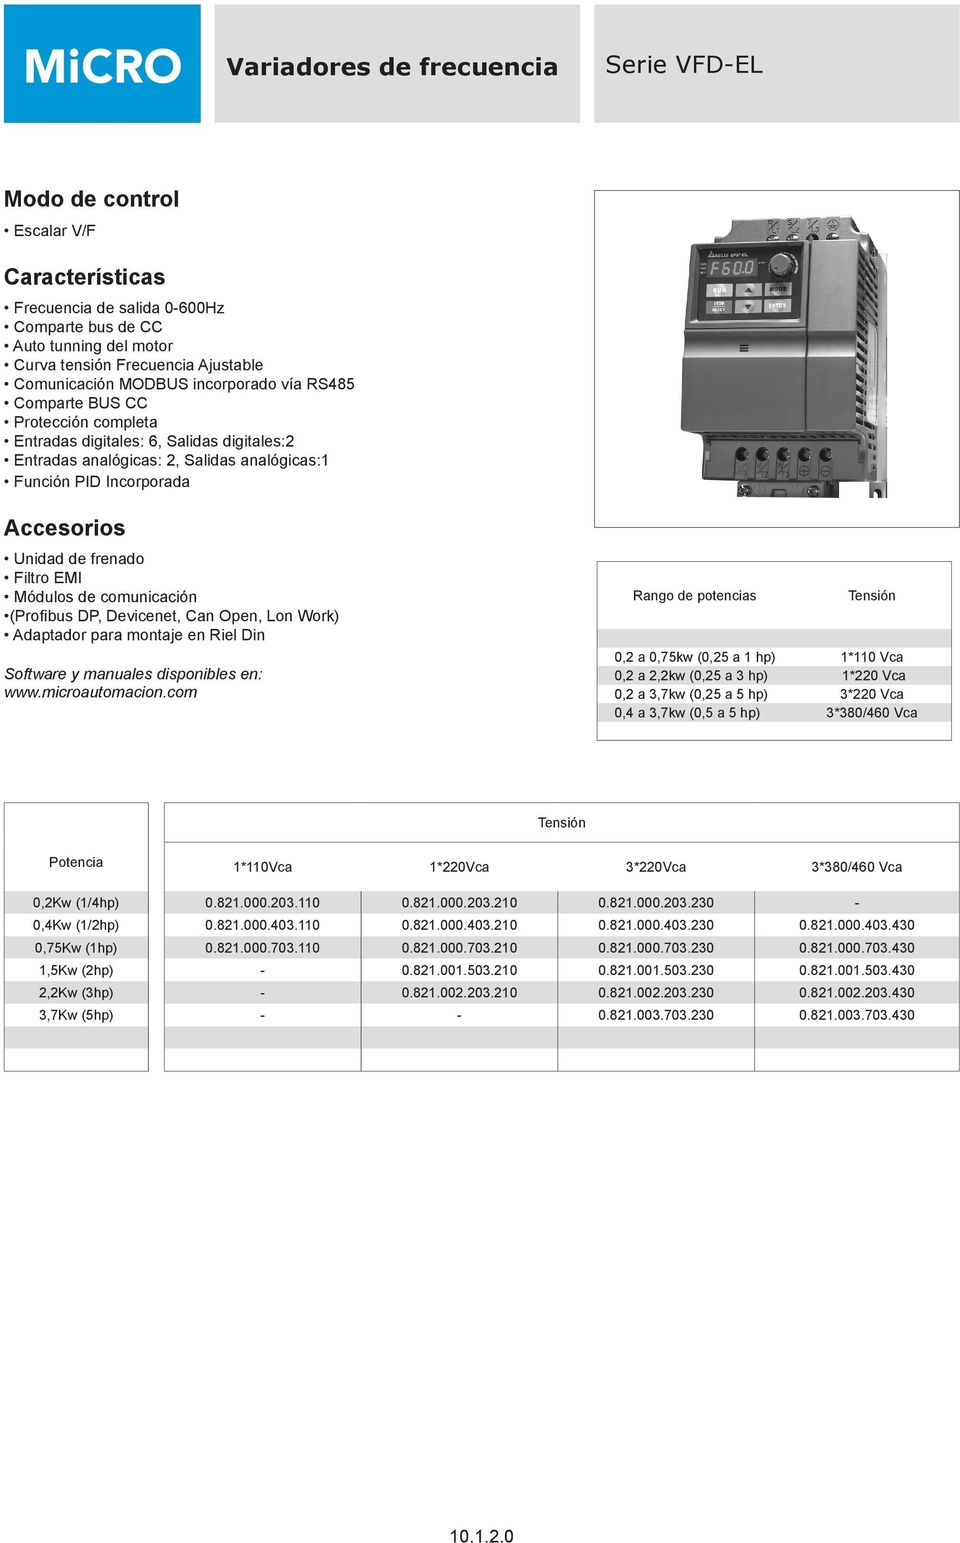 Accesorios Unidad de frenado Filtro EMI Módulos de comunicación (Profibus DP, Devicenet, Can Open, Lon Work) Adaptador para montaje en Riel Din Software y manuales disponibles en: www.microautomacion.